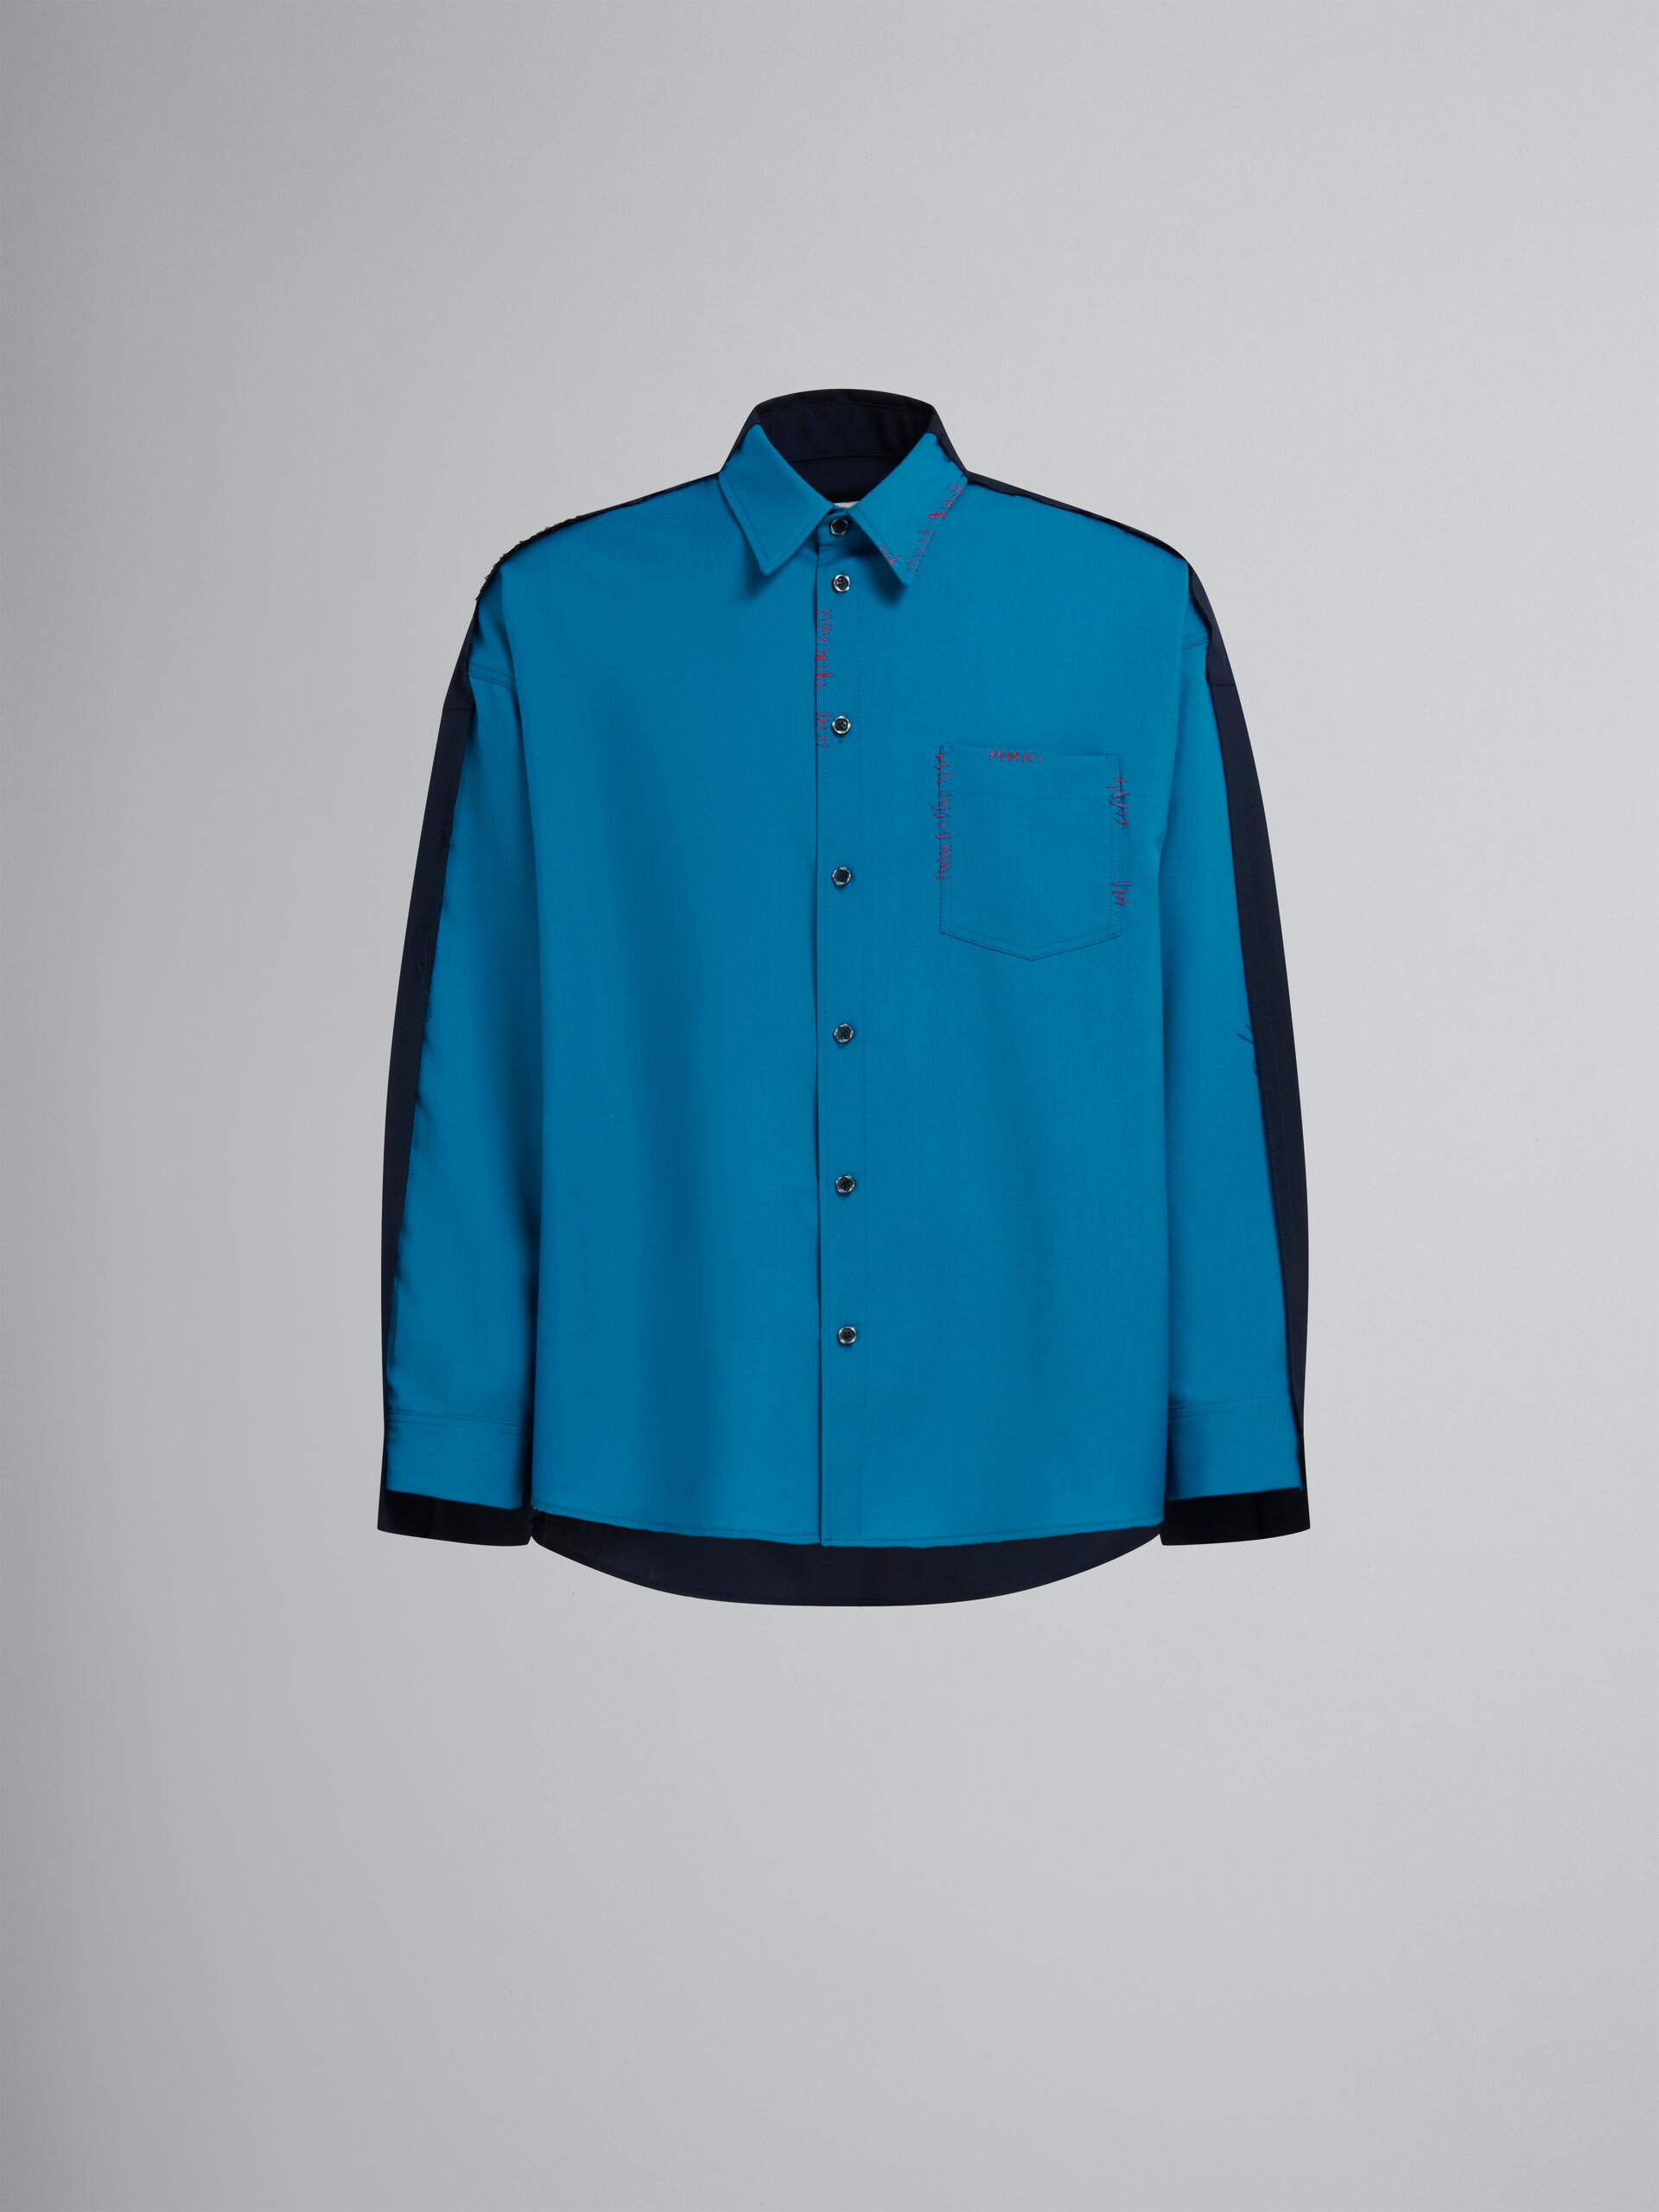 Blaues Hemd aus Tropenwolle mit kontrastierender Rückseite - Hemden - Image 1